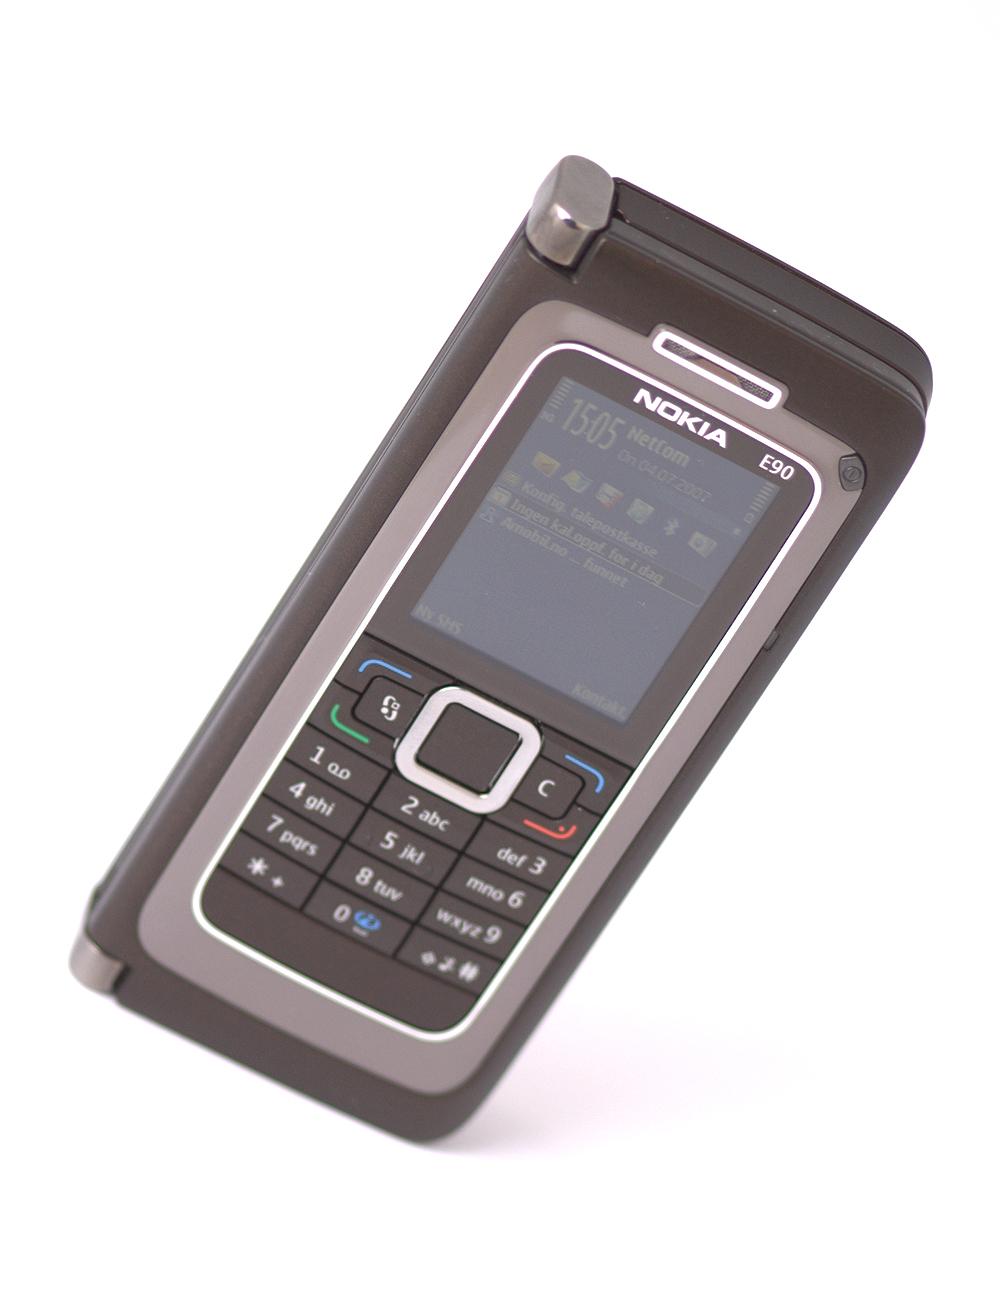 All teknologien gjør E90 til en telefon som ruver høyt over landskapet.